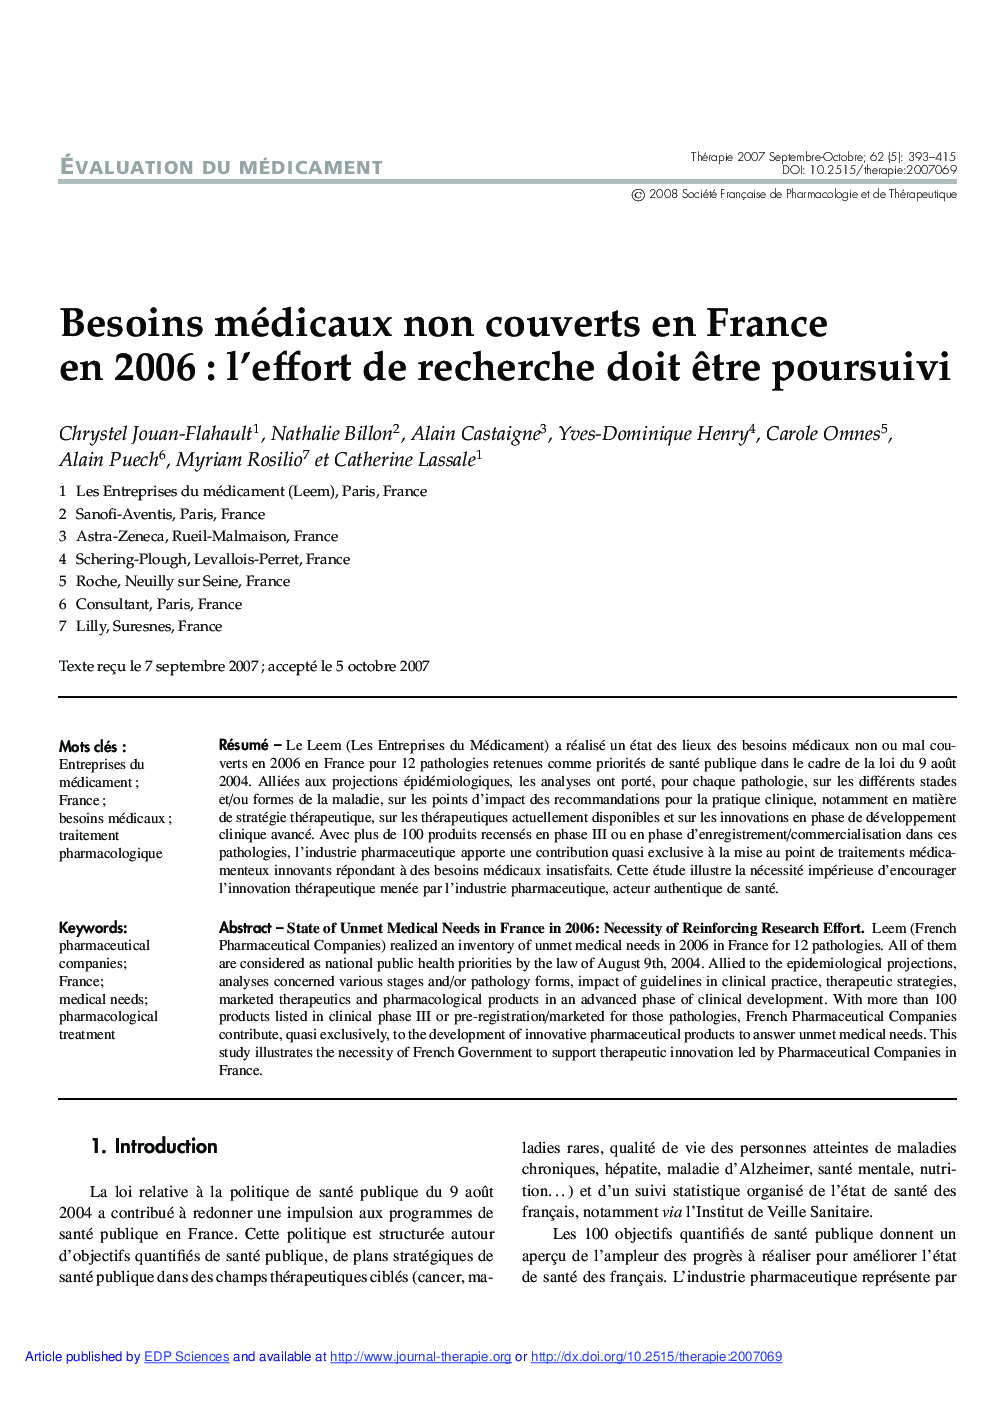 Besoins médicaux non couverts en France en 2006 : l'effort de recherche doit Ãªtre poursuivi